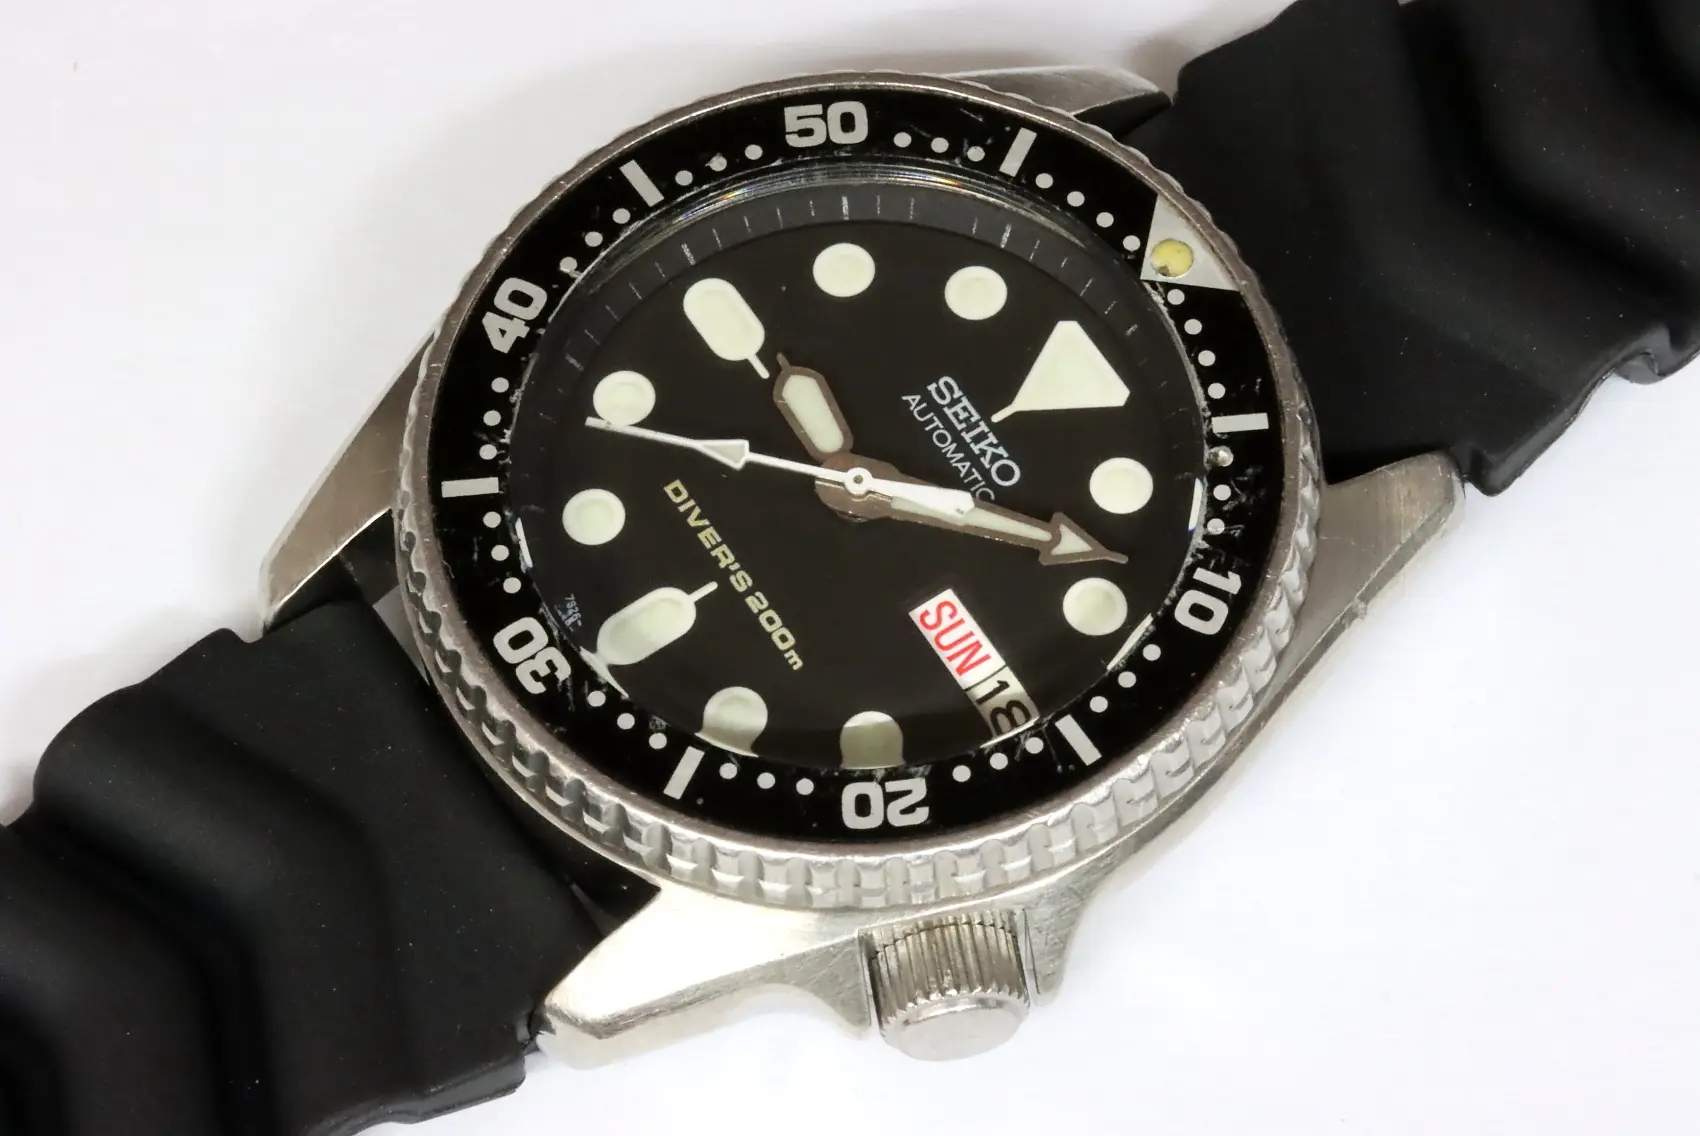 Seiko 7S26-0030 SKX013 midsize diver's watch